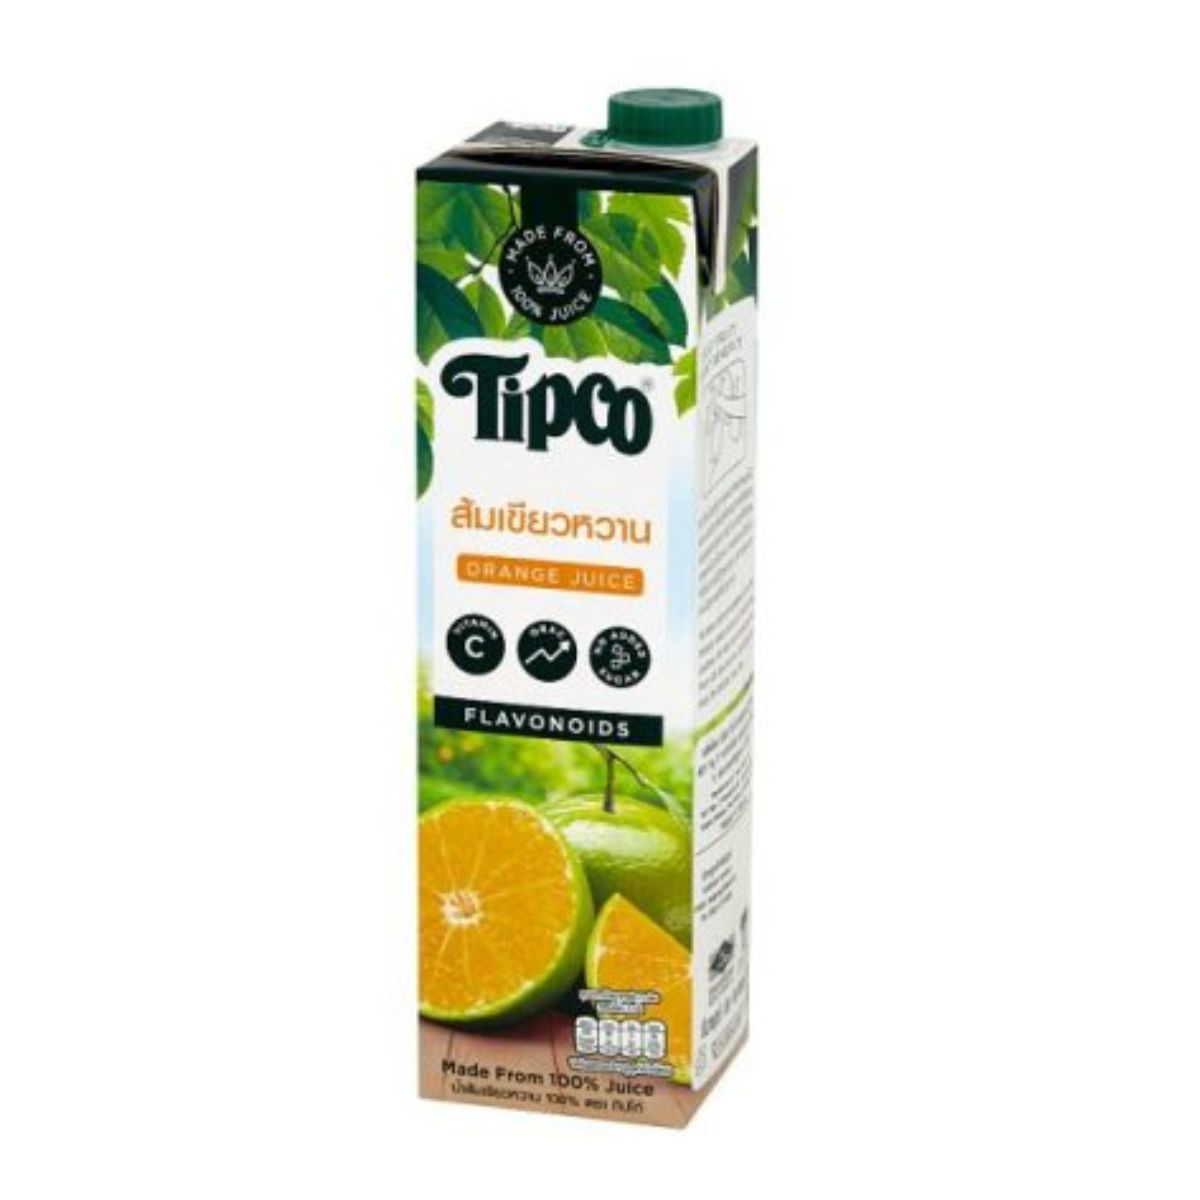 Tipco Tangerine Orange Juice - Flavonoids - 1L